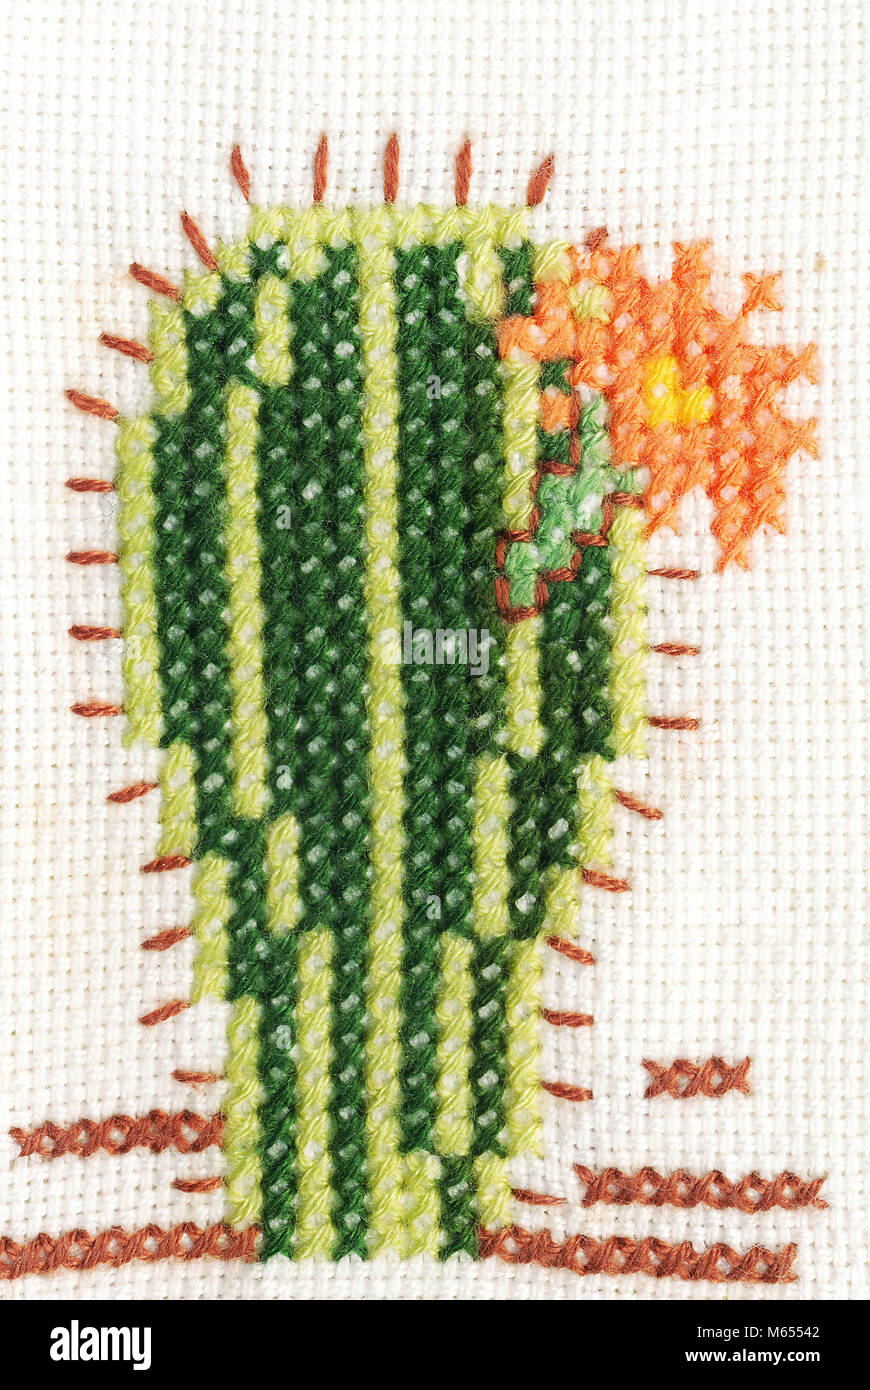 Broderie au point de croix sur toile aida avec cactus et fleurs Photo Stock  - Alamy